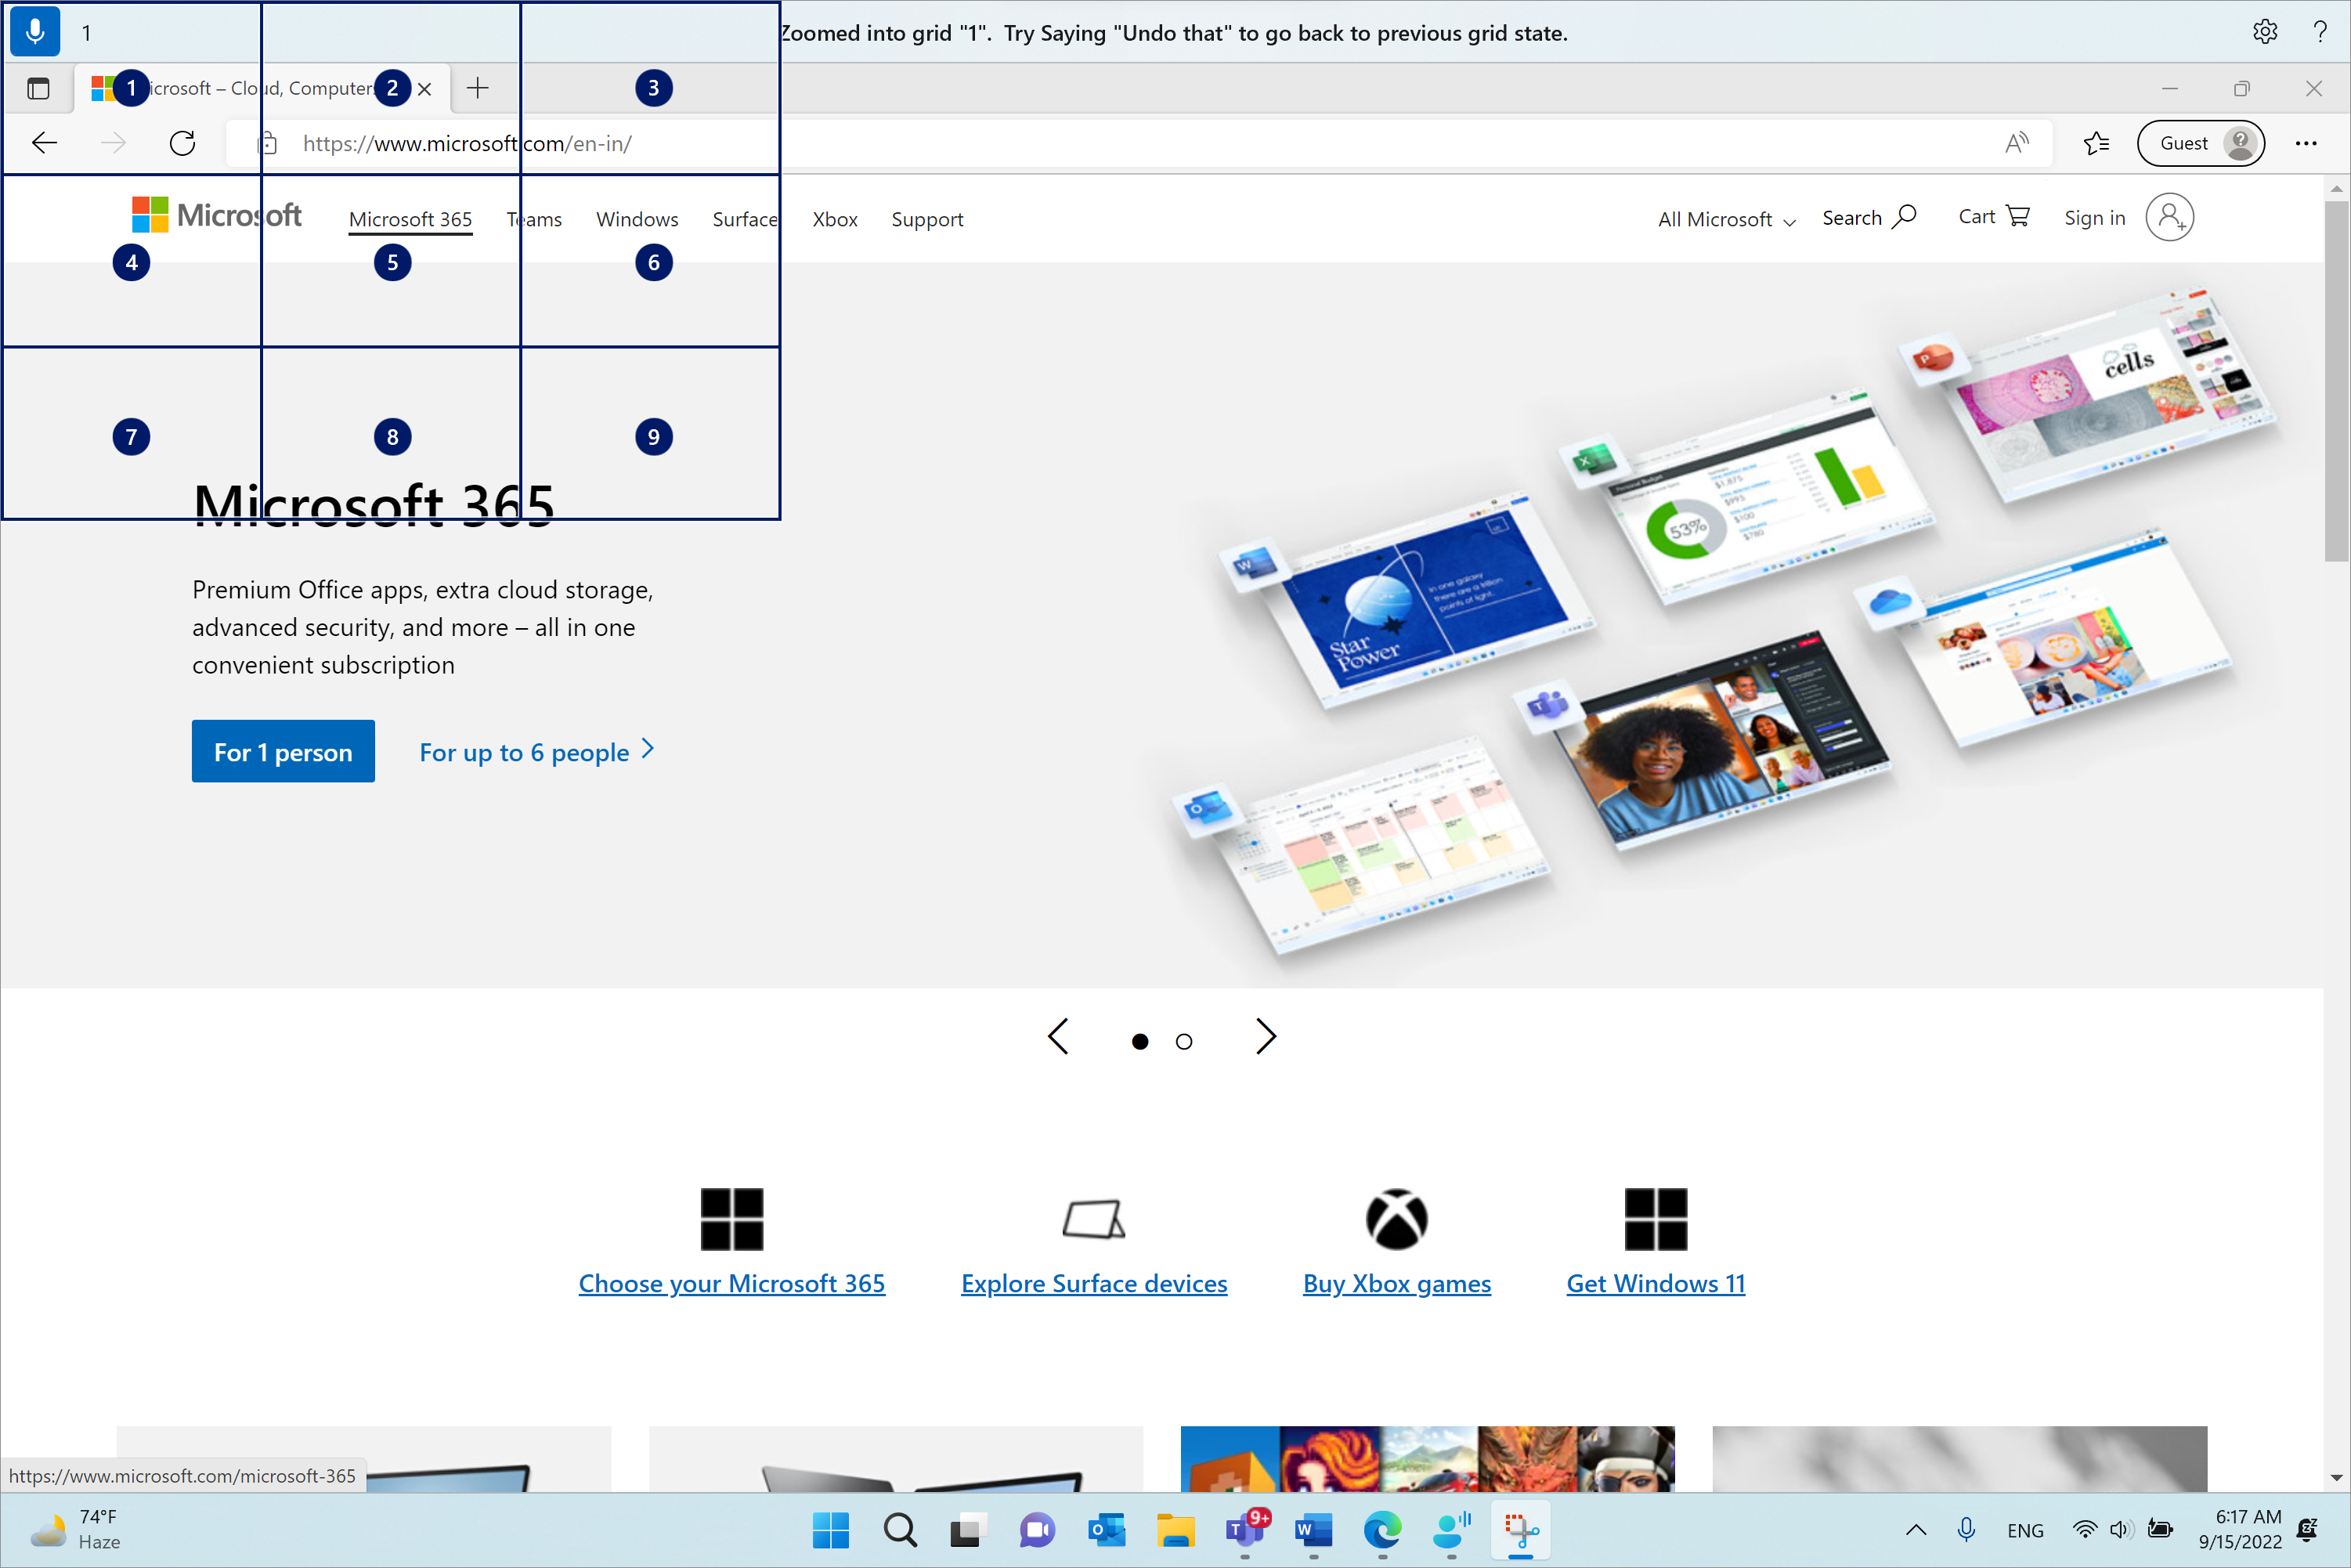 Microsoft Edge открыт и на странице Microsoft.com. Панель голосового доступа находится поверх и находится в состоянии прослушивания. Выданная команда имеет значение "1", а отображаемый отзыв — "Масштабируется в сетку "1". Попробуйте отменить это, чтобы вернуться в предыдущее состояние сетки.